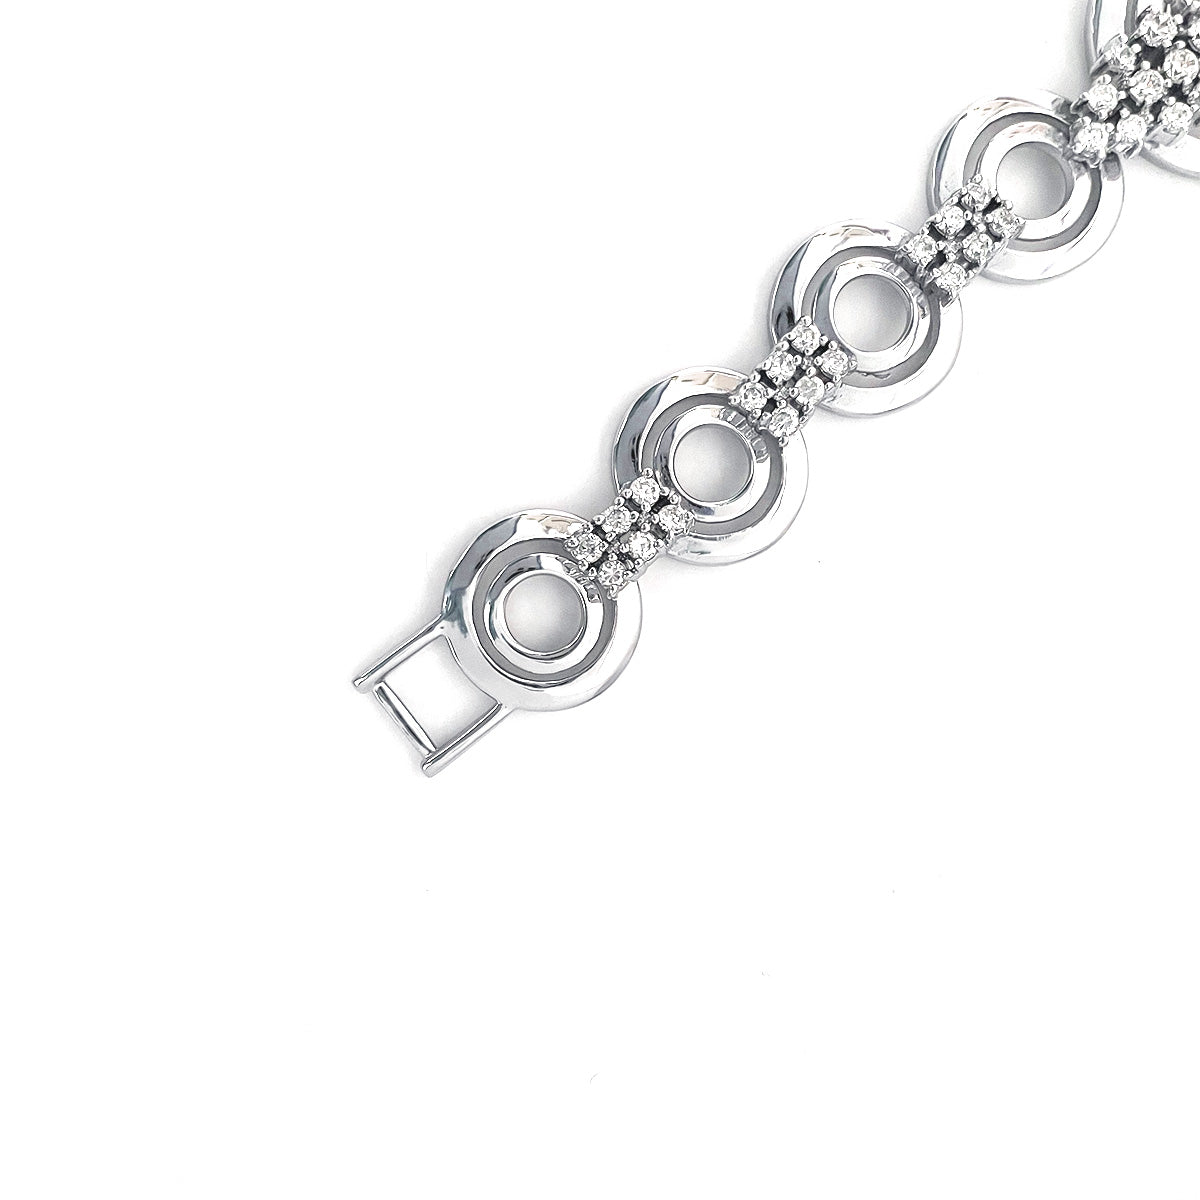 BMB90006 - Modern Luxury Italian Style Faux Diamond - Bracelet